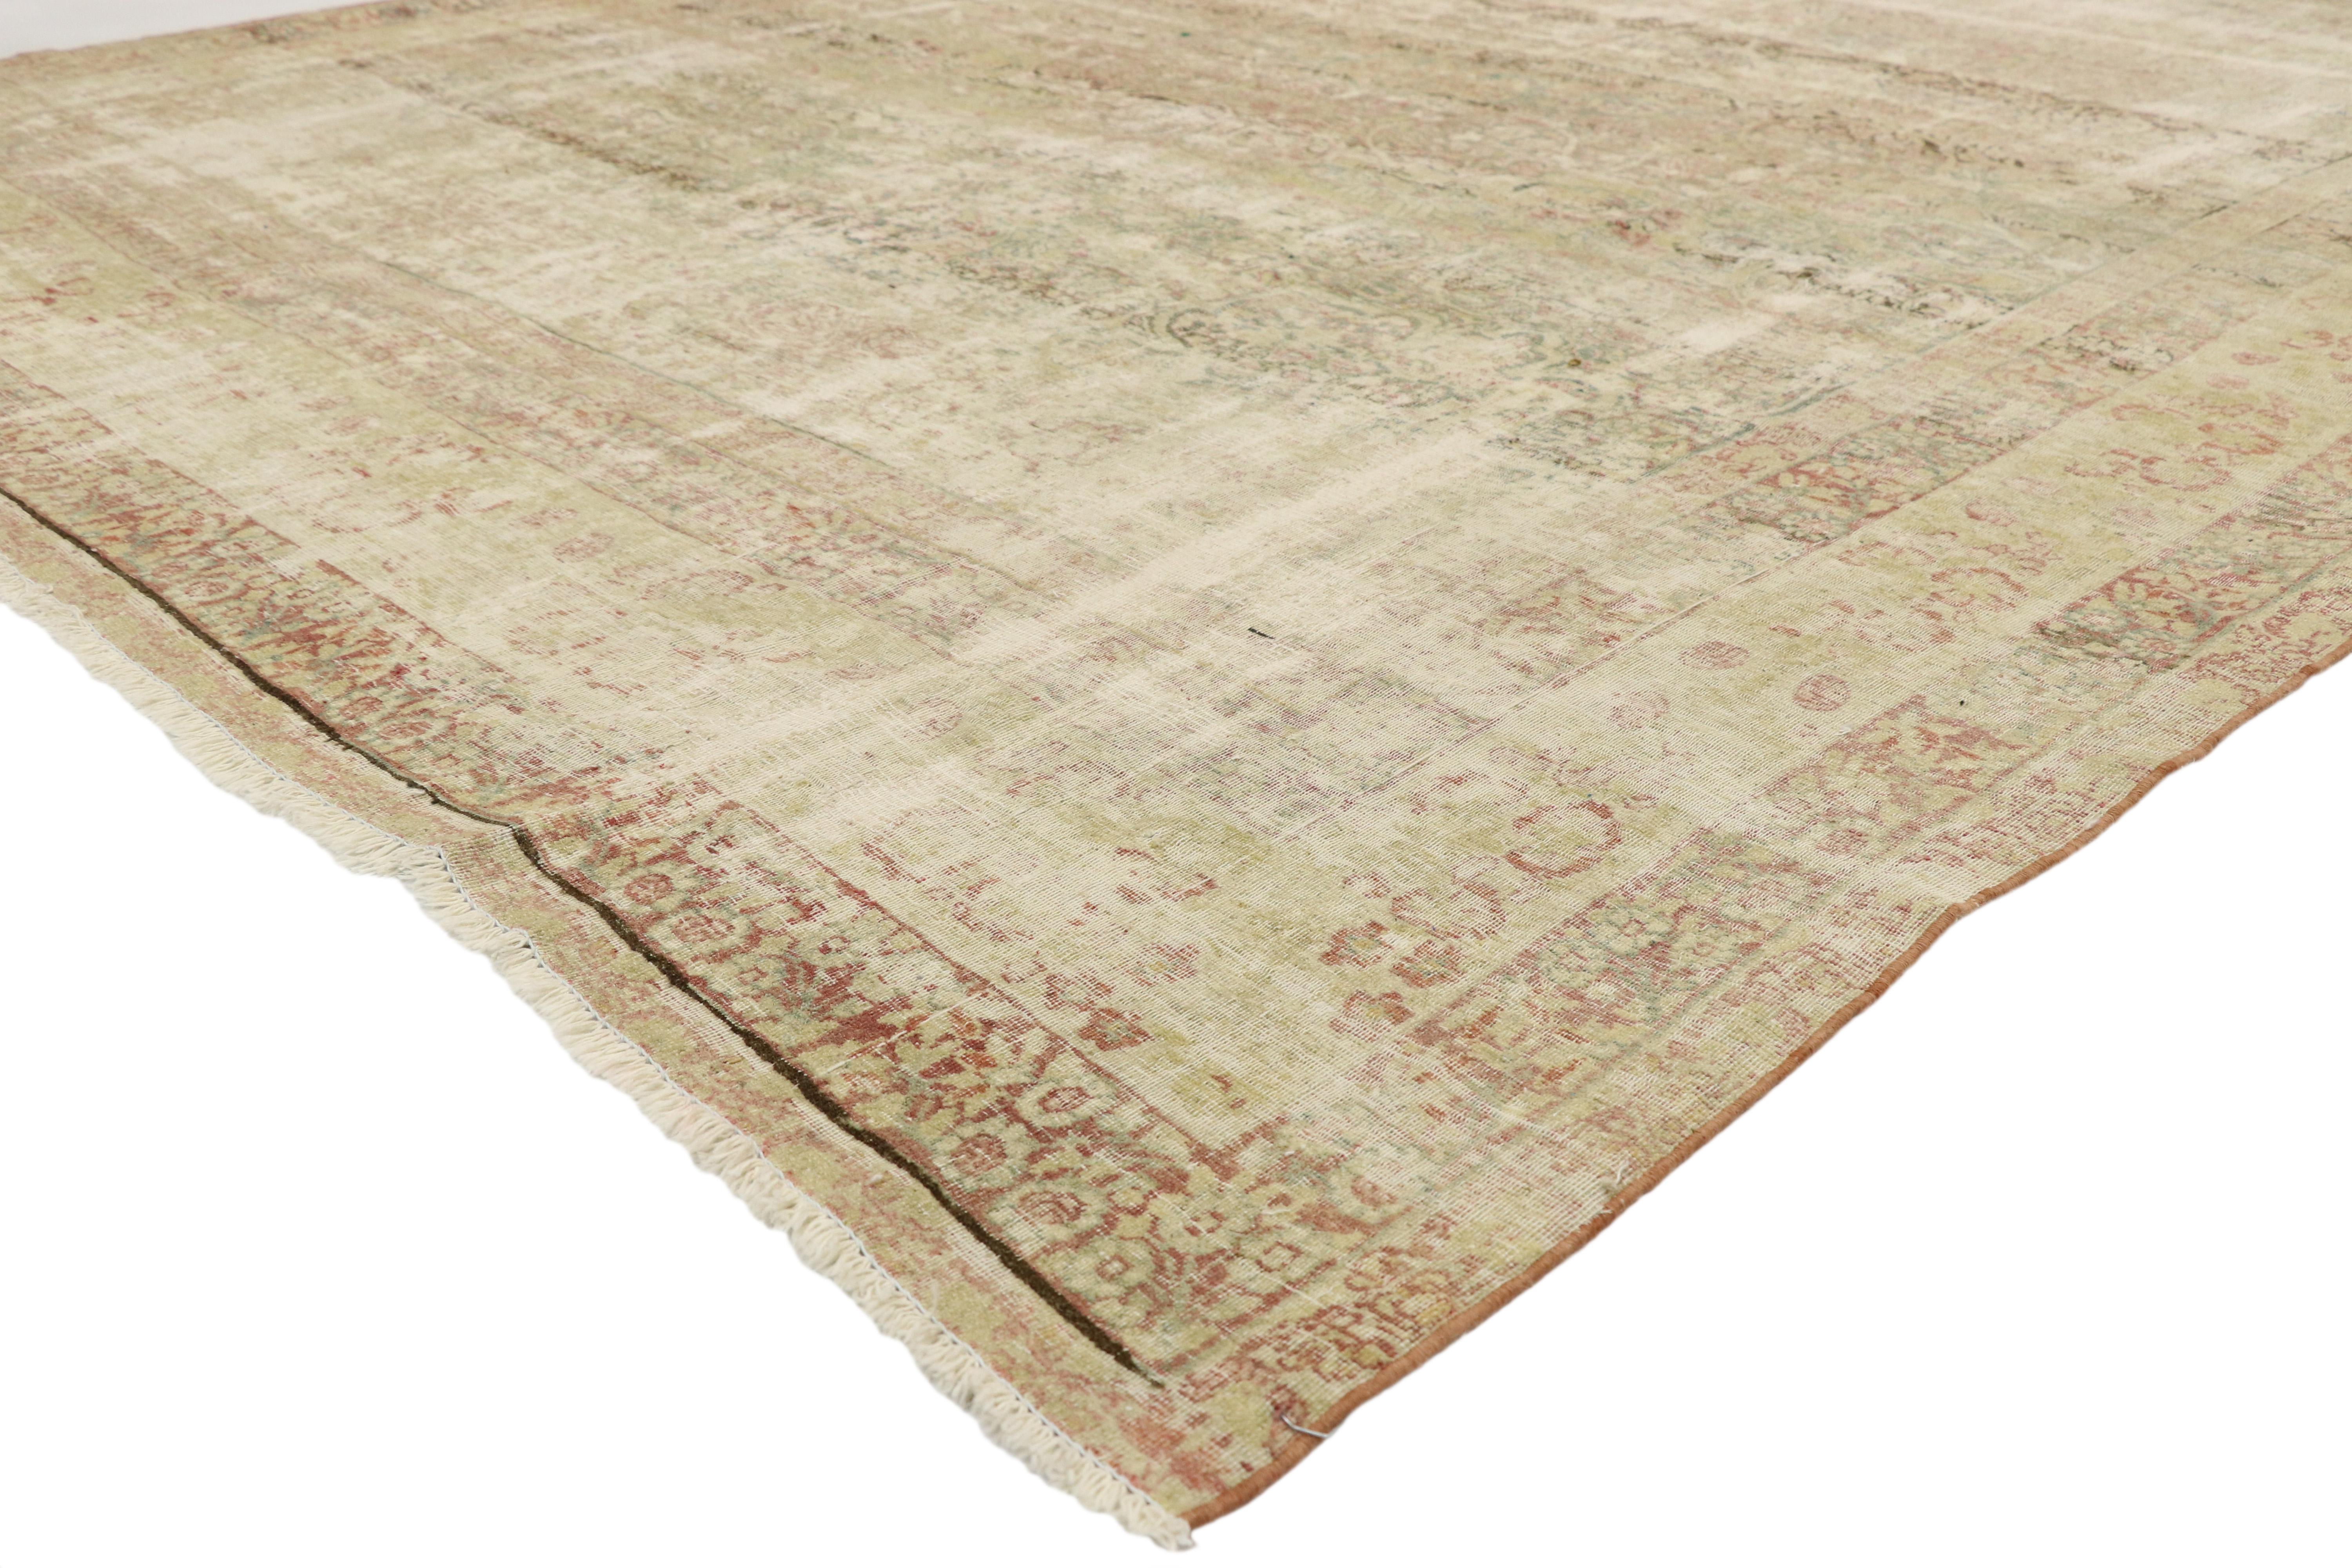 74907 Distressed Vintage Persian Kerman Rug, 08'01 x 12'06. Antike gewaschene Kerman-Teppiche sind eine spezielle Art von Perserteppichen, die durch gezielte Waschtechniken und -prozesse ein Vintage-Aussehen erhalten. Diese Teppiche stammen aus der